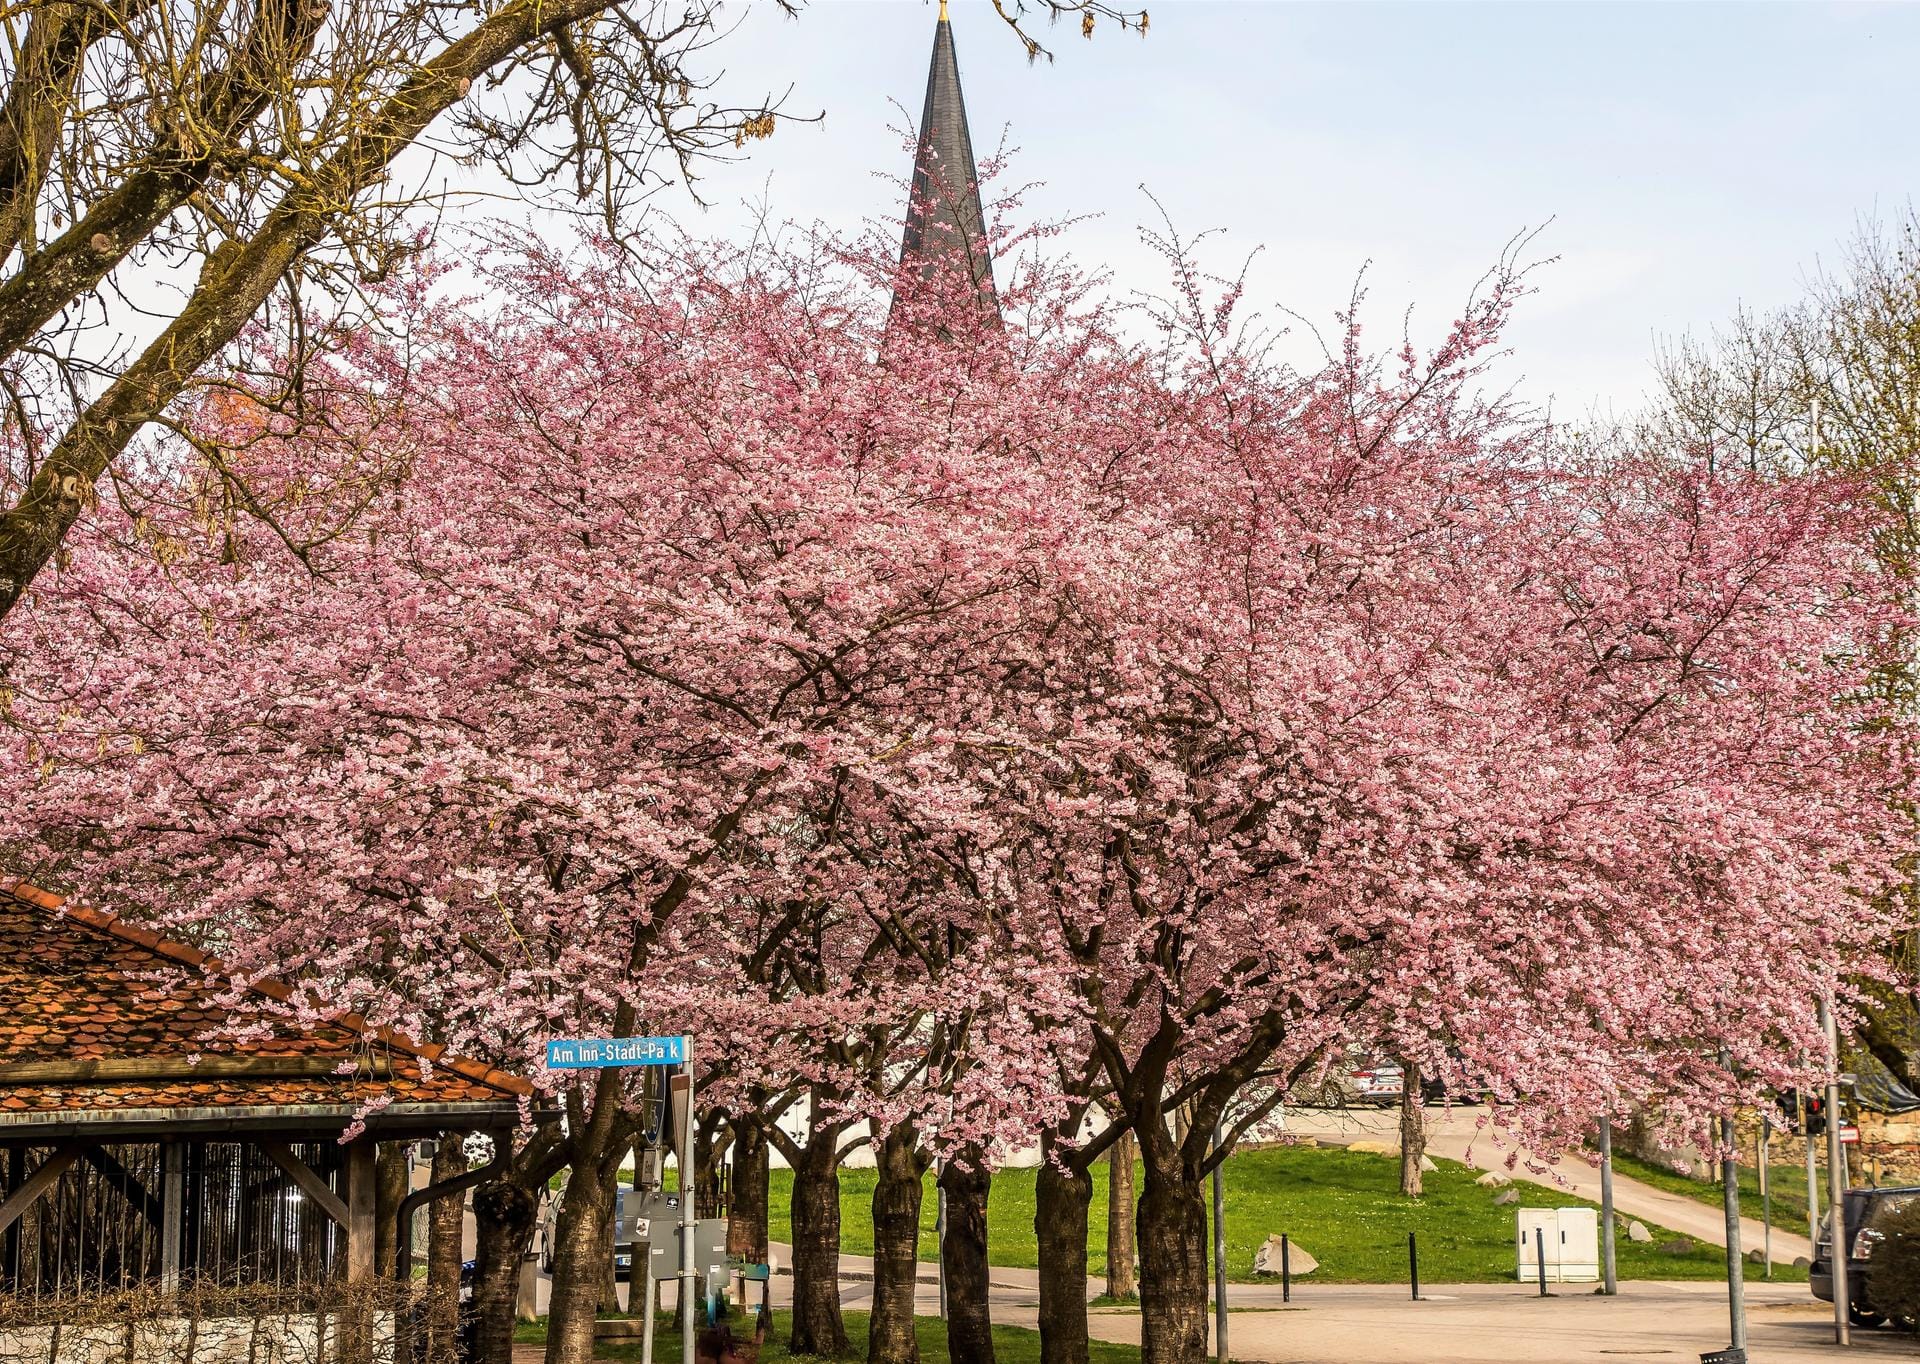 Von der Frauenkirche des Mühldorfer Stadtplatzes ist nur noch die Spitze zu sehen. Der schöne Park ist gefüllt mit pinkfarbenen Kirschblüten.